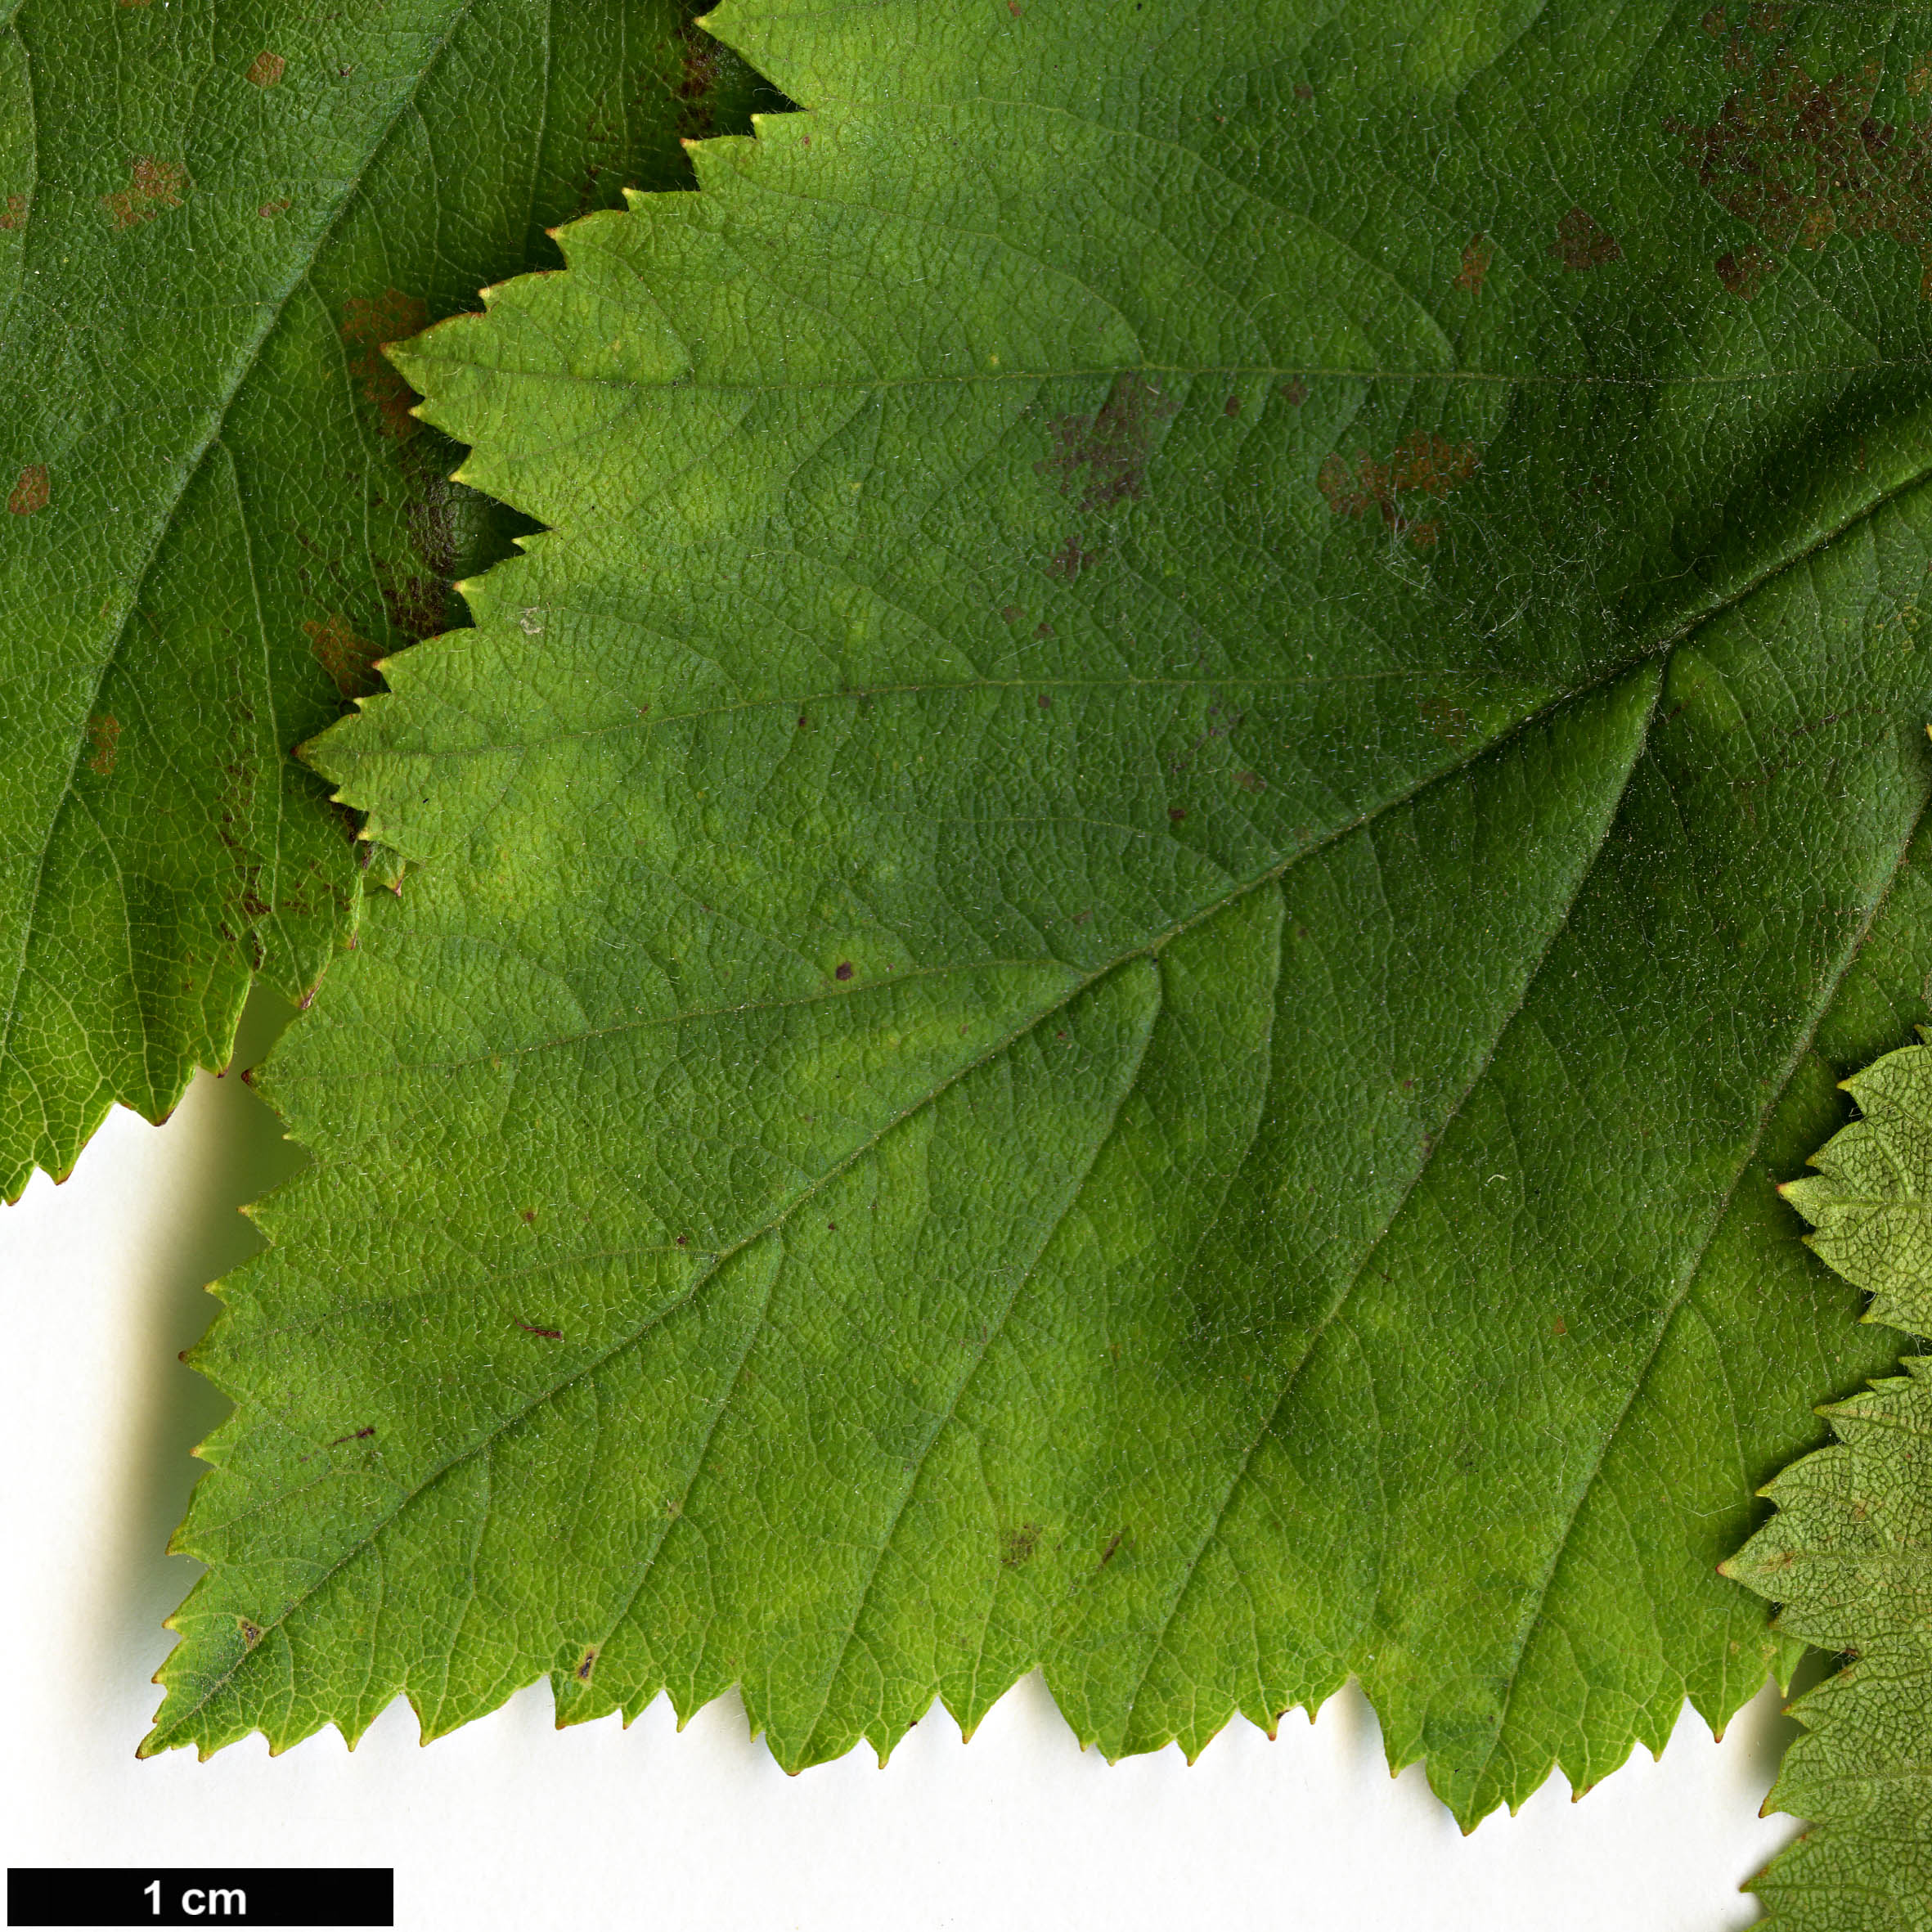 High resolution image: Family: Rosaceae - Genus: Crataegus - Taxon: coccinea - SpeciesSub: var. fulleriana